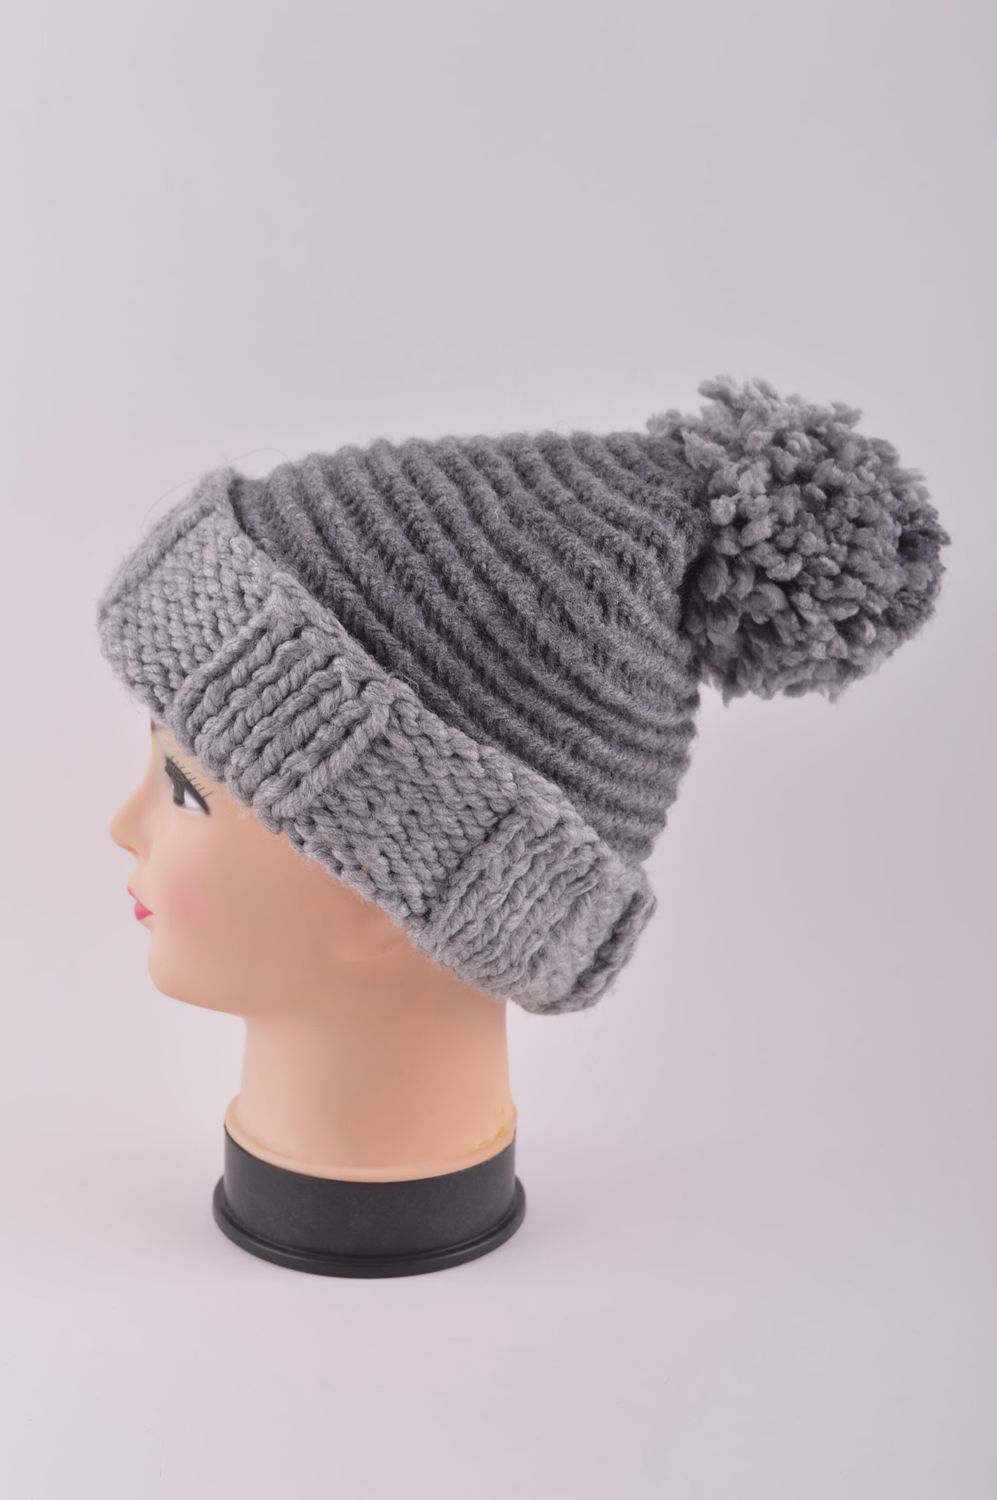 Handmade woolen winter hat hand-knitted hat winter accessories warm hat photo 3